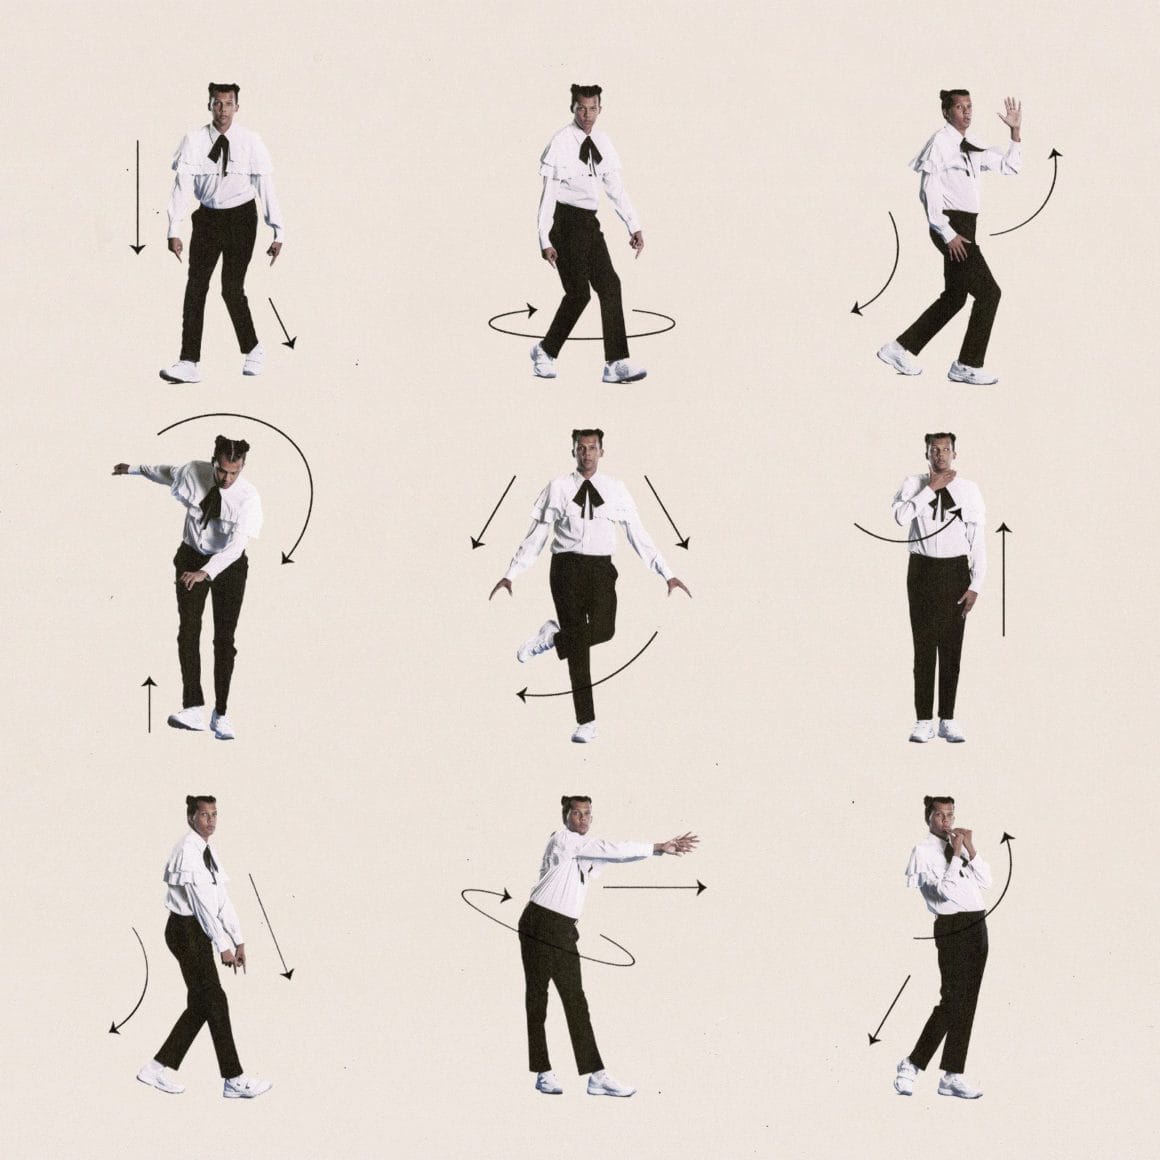 stromae dans son illustration pour le single santé présente 9 versions de lui faisant des mouvements de danse devant un fond uni jaune pâle.